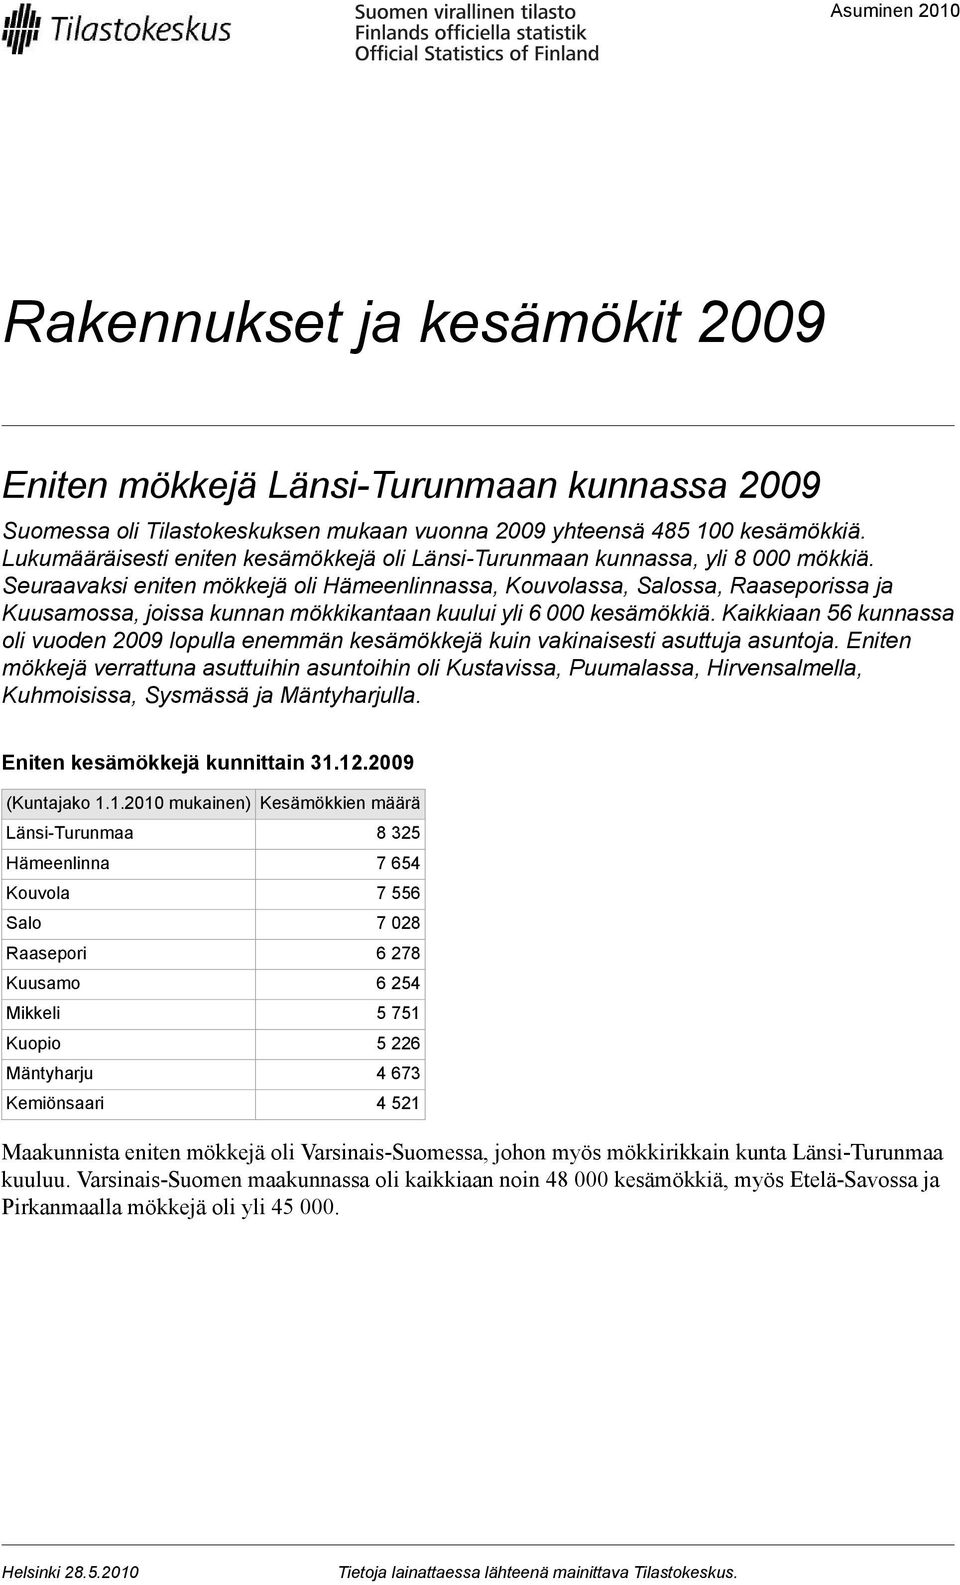 Seuraavaksi eniten mökkejä oli Hämeenlinnassa, Kouvolassa, Salossa, Raaseporissa ja Kuusamossa, joissa kunnan mökkikantaan kuului yli 6 000 kesämökkiä.